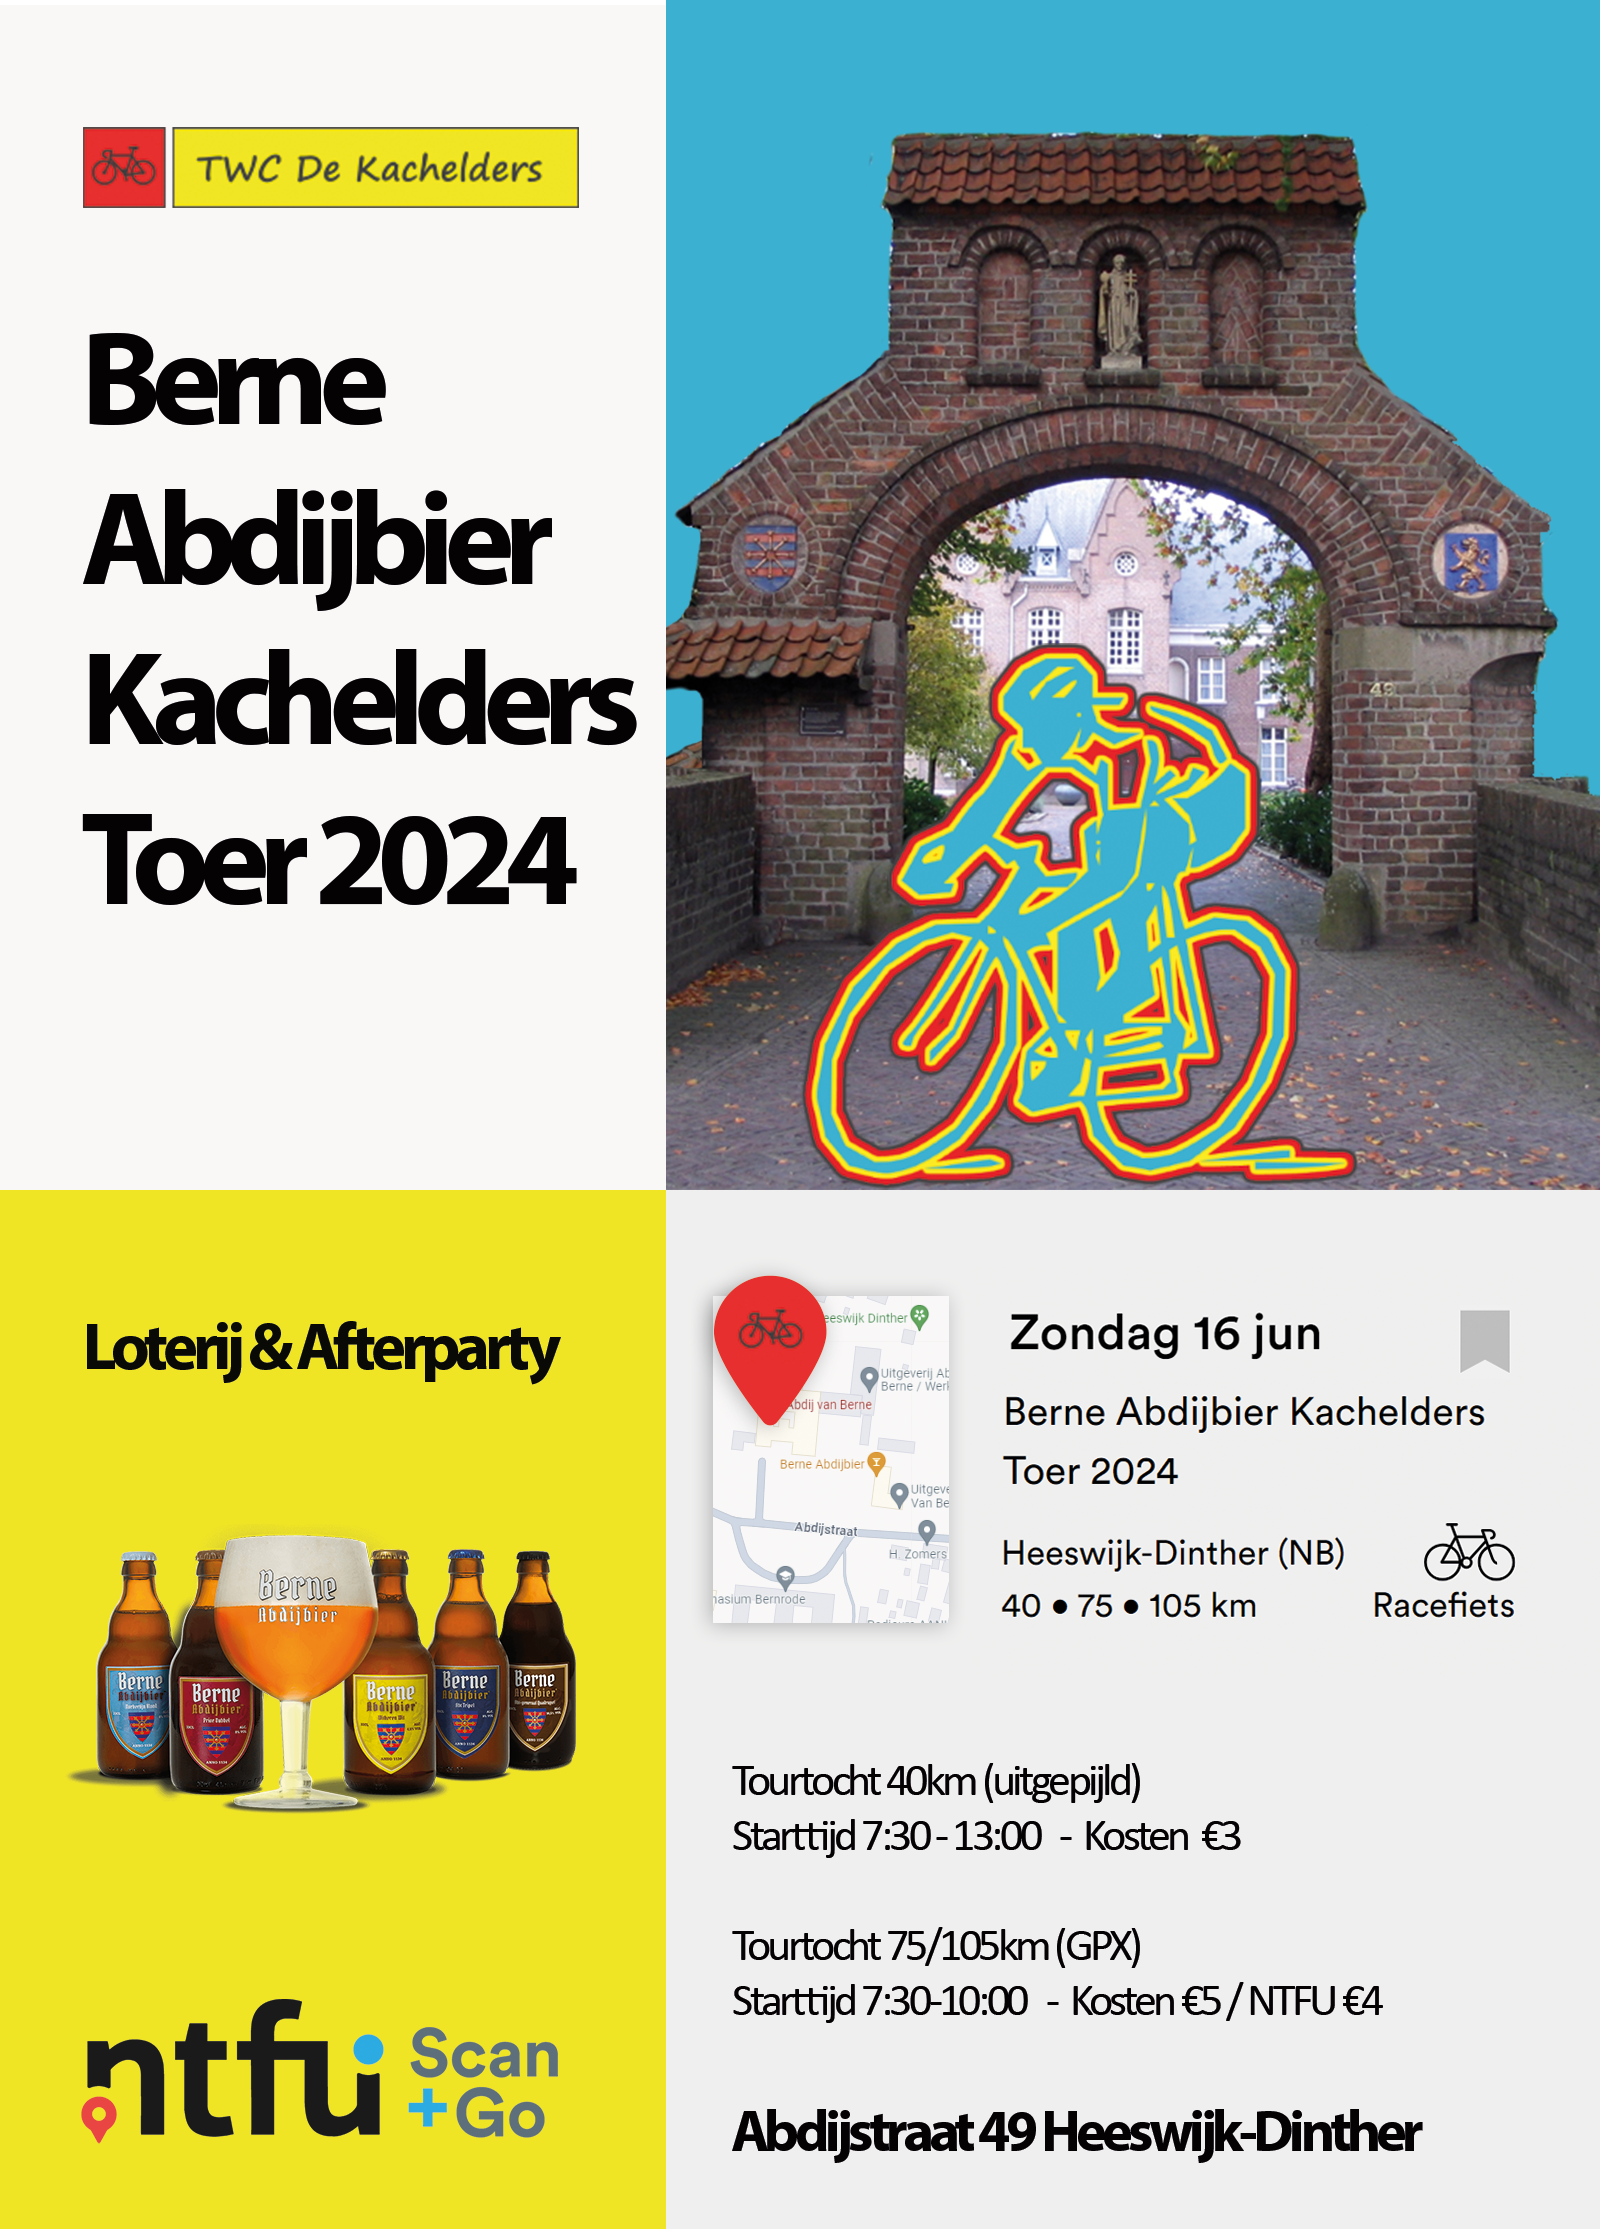 Berne Abdijbier Kachelders Toer 2024